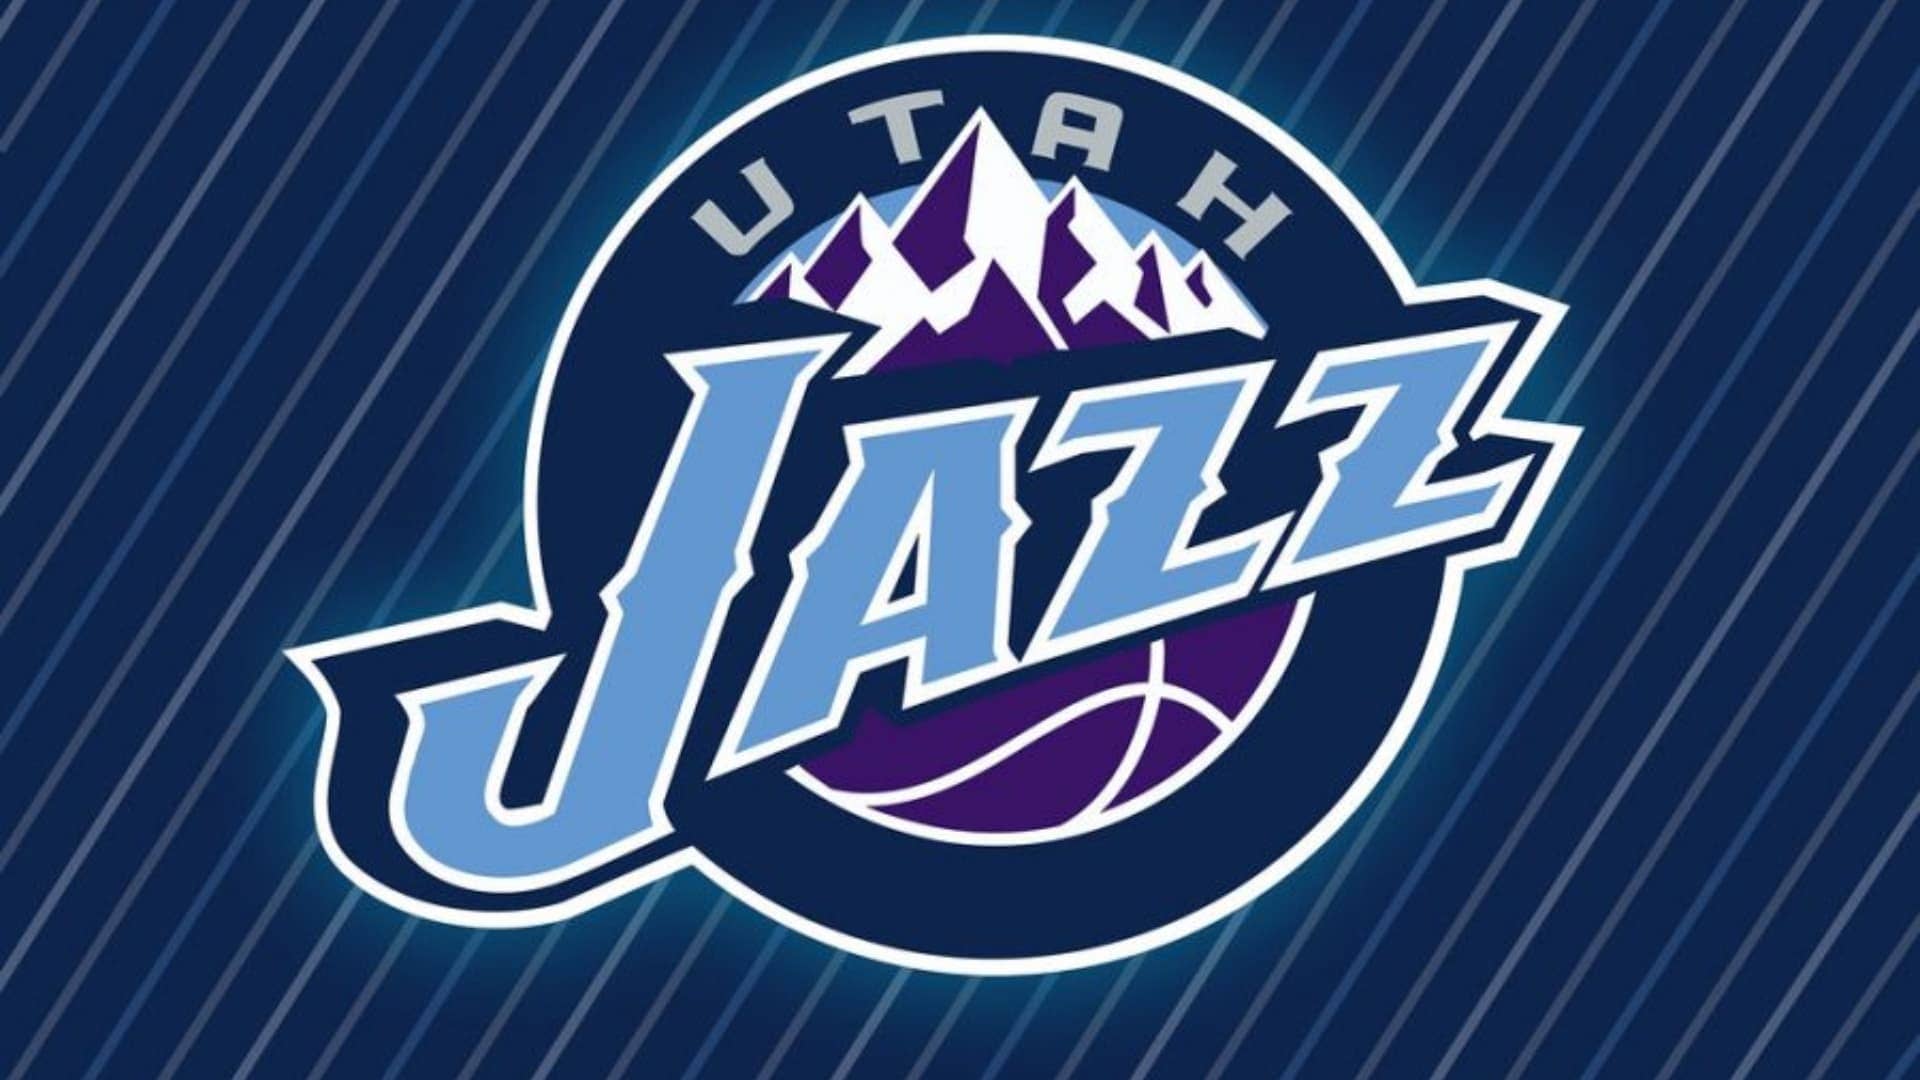 Utah Jaz- Oldest NBA Teams